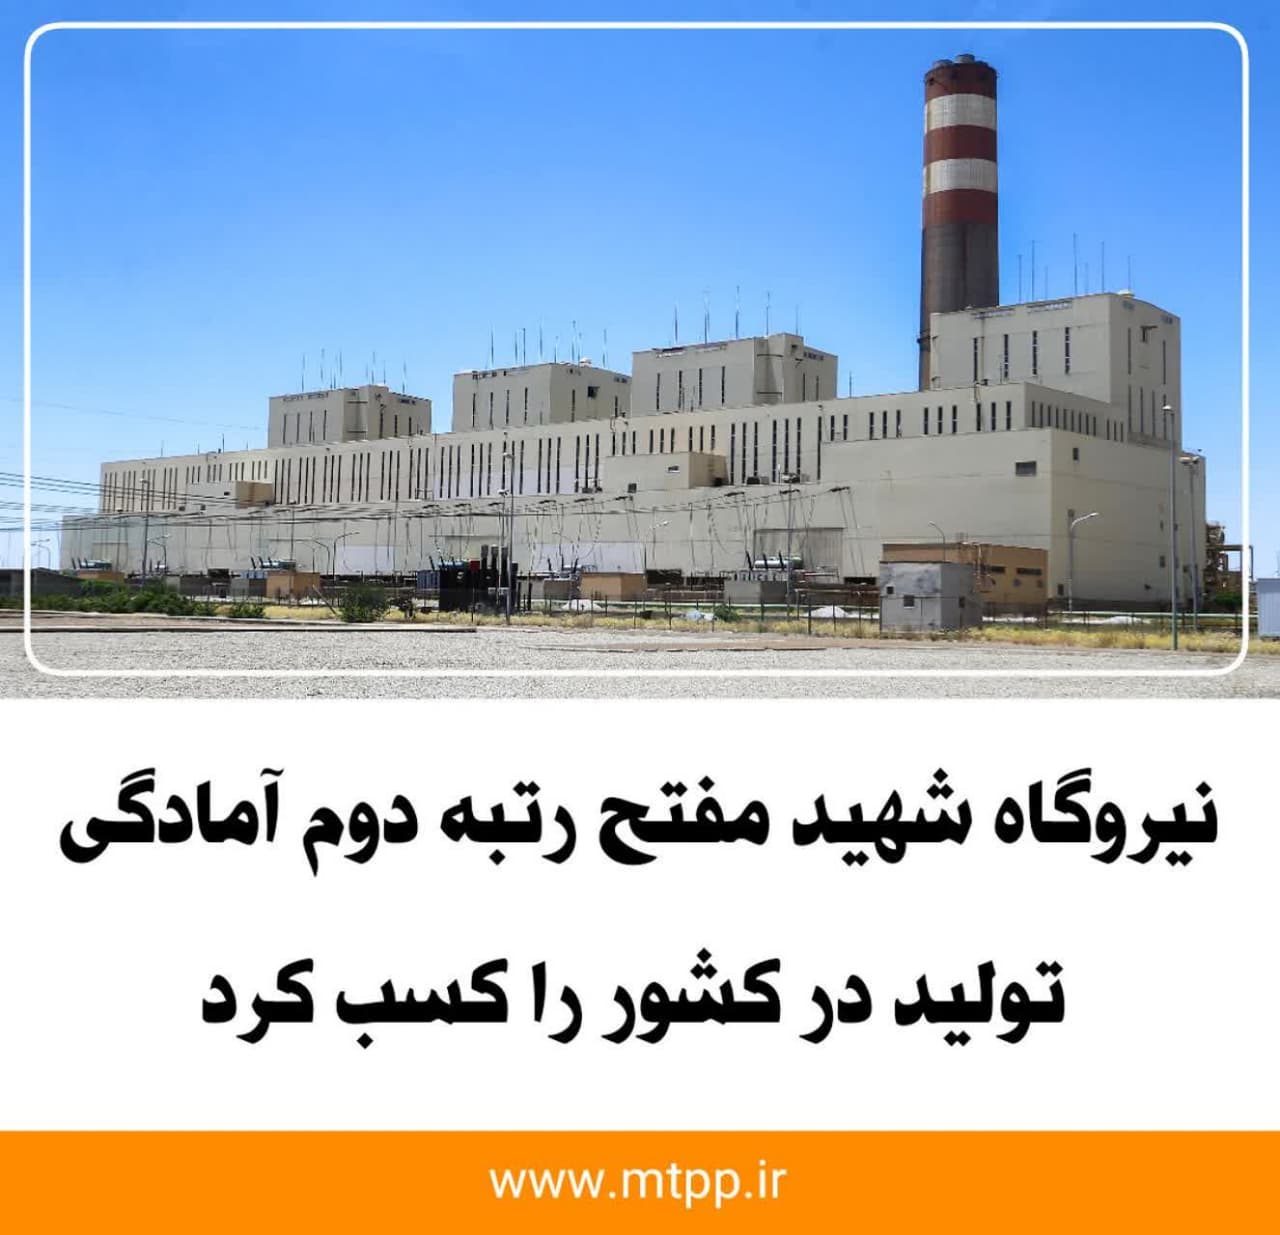 نیروگاه شهید مفتح رتبه دوم آمادگی تولید در کشور را کسب کرد